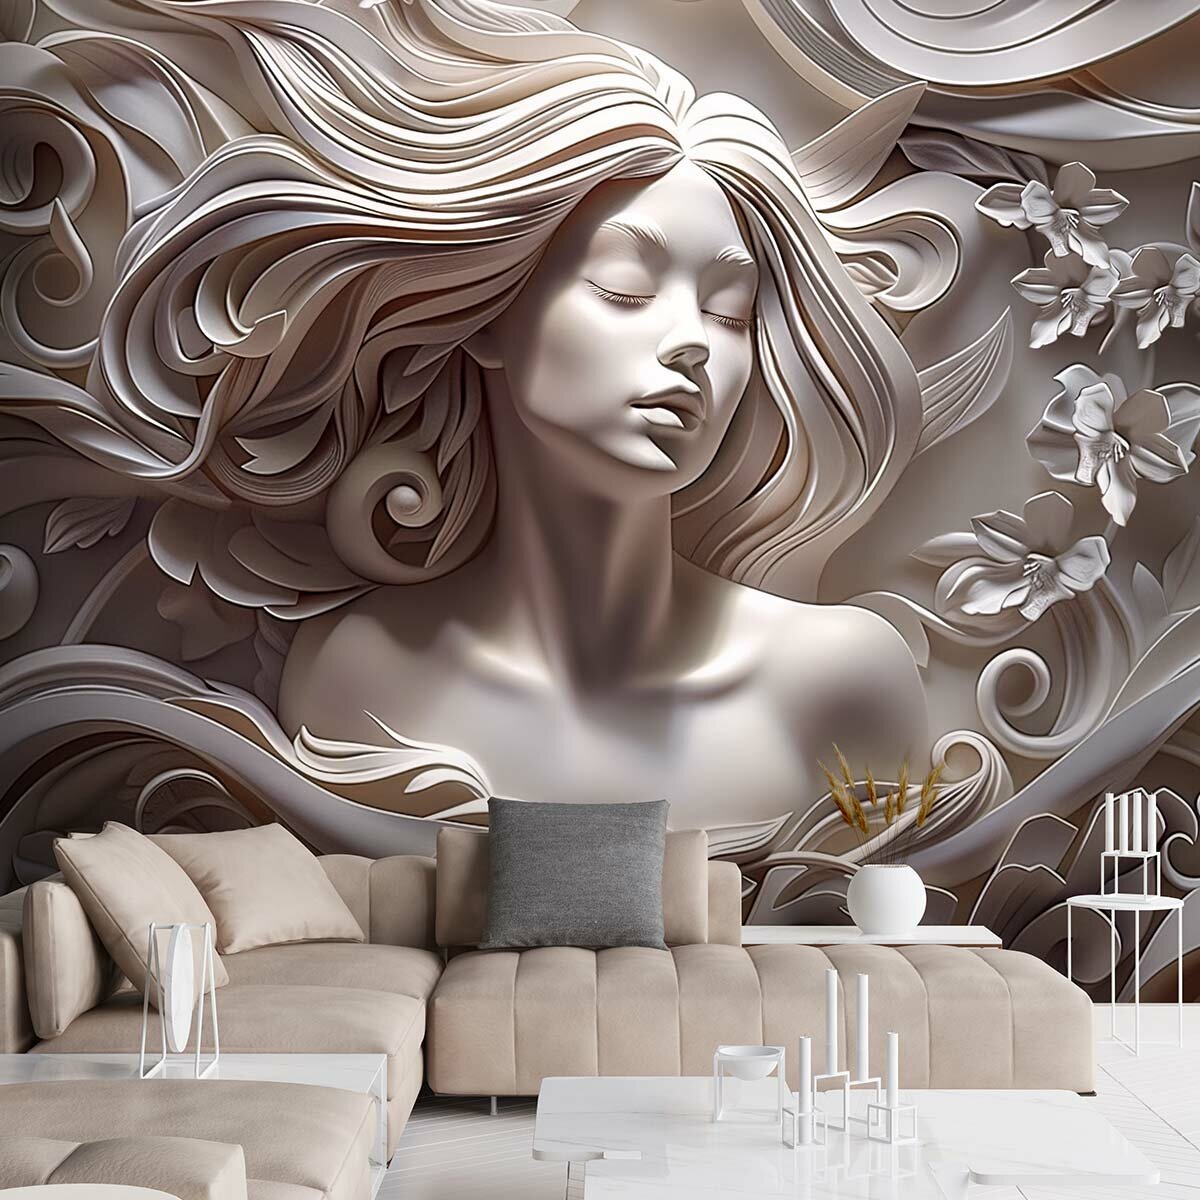 Фотообои 3D флизелиновые с виниловым покрытием VEROL "Девушка барельеф", 300х283 см, моющиеся обои на стену, декор для дома